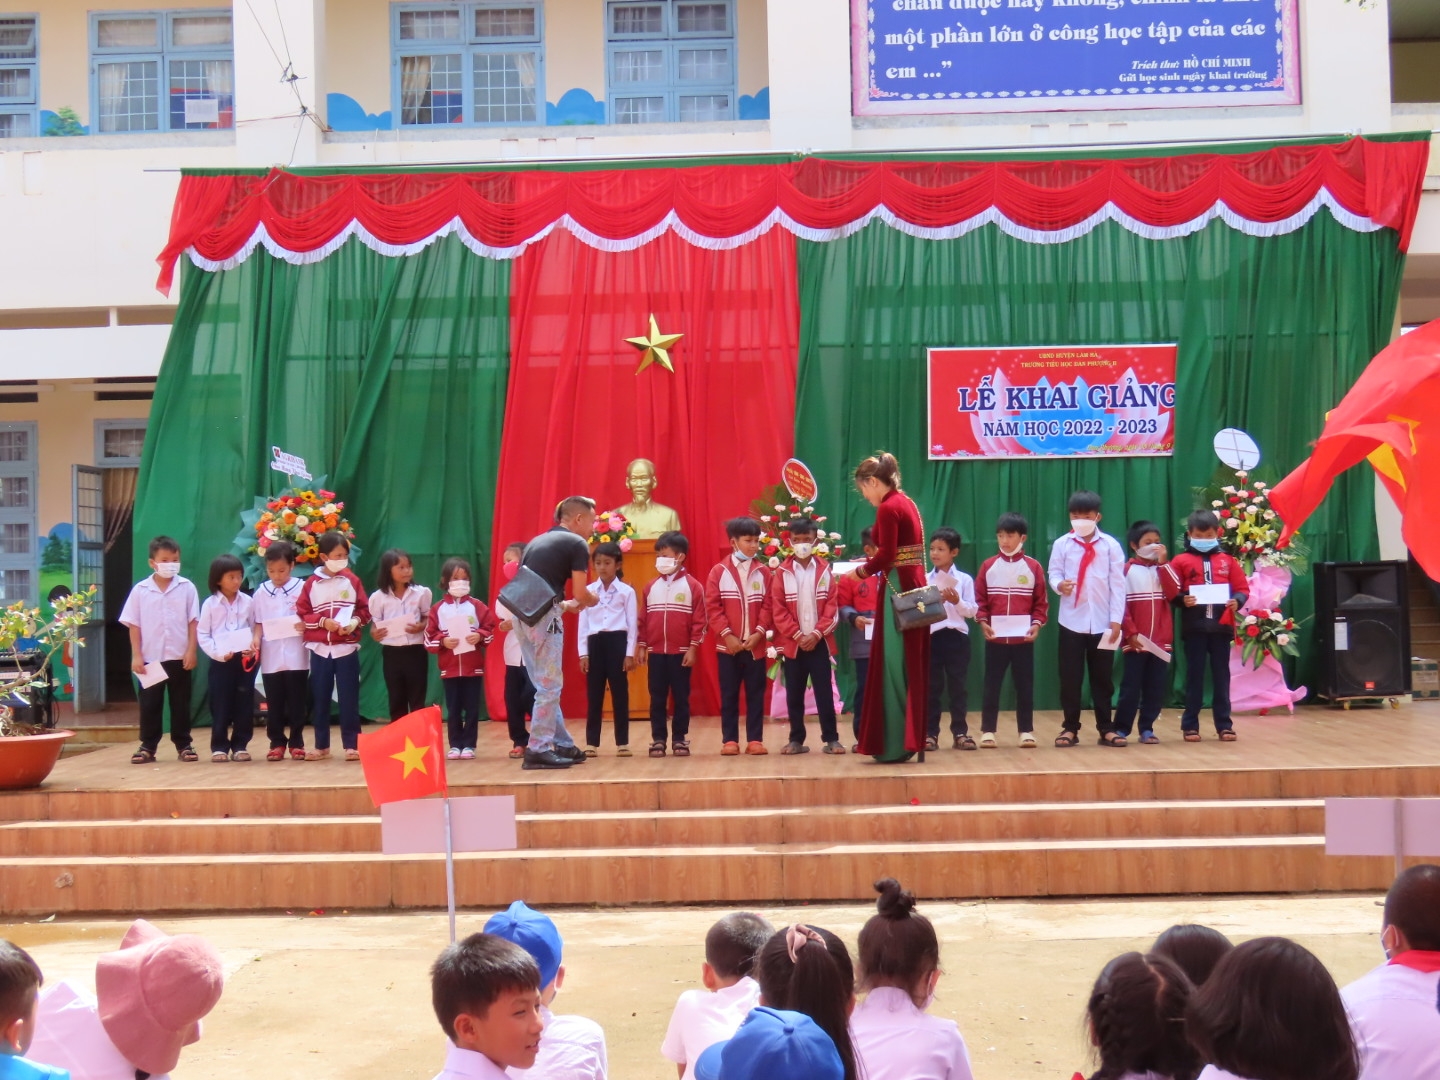 Huyện Lâm Hà (Lâm Đồng): Buổi khai trường nhiều niềm vui ở Trường Tiểu học Đan Phượng II